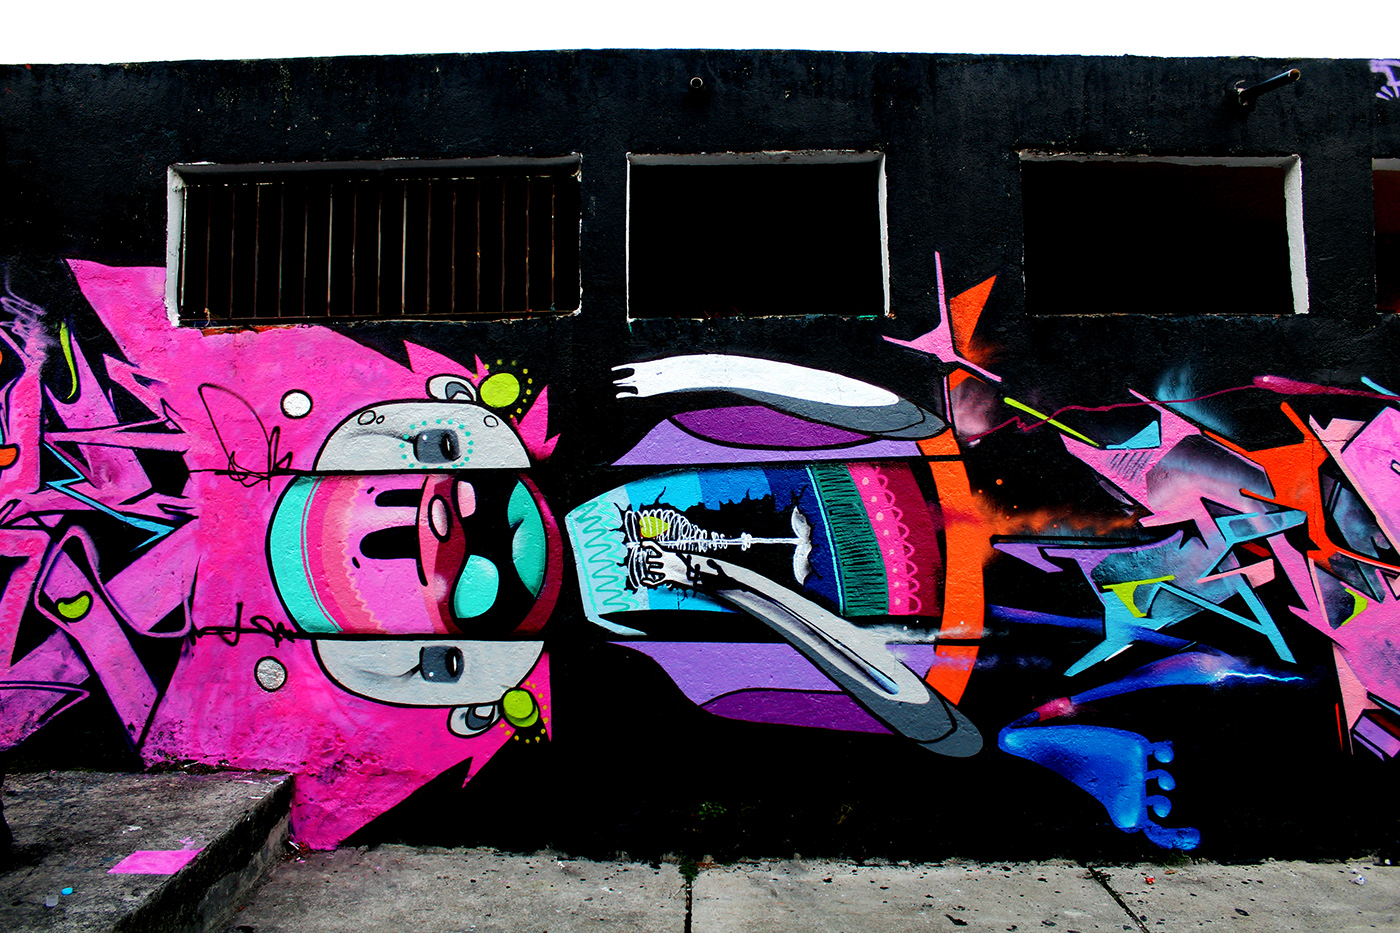 nick alive Graffiti Street Art  urban art concept art contemporary art